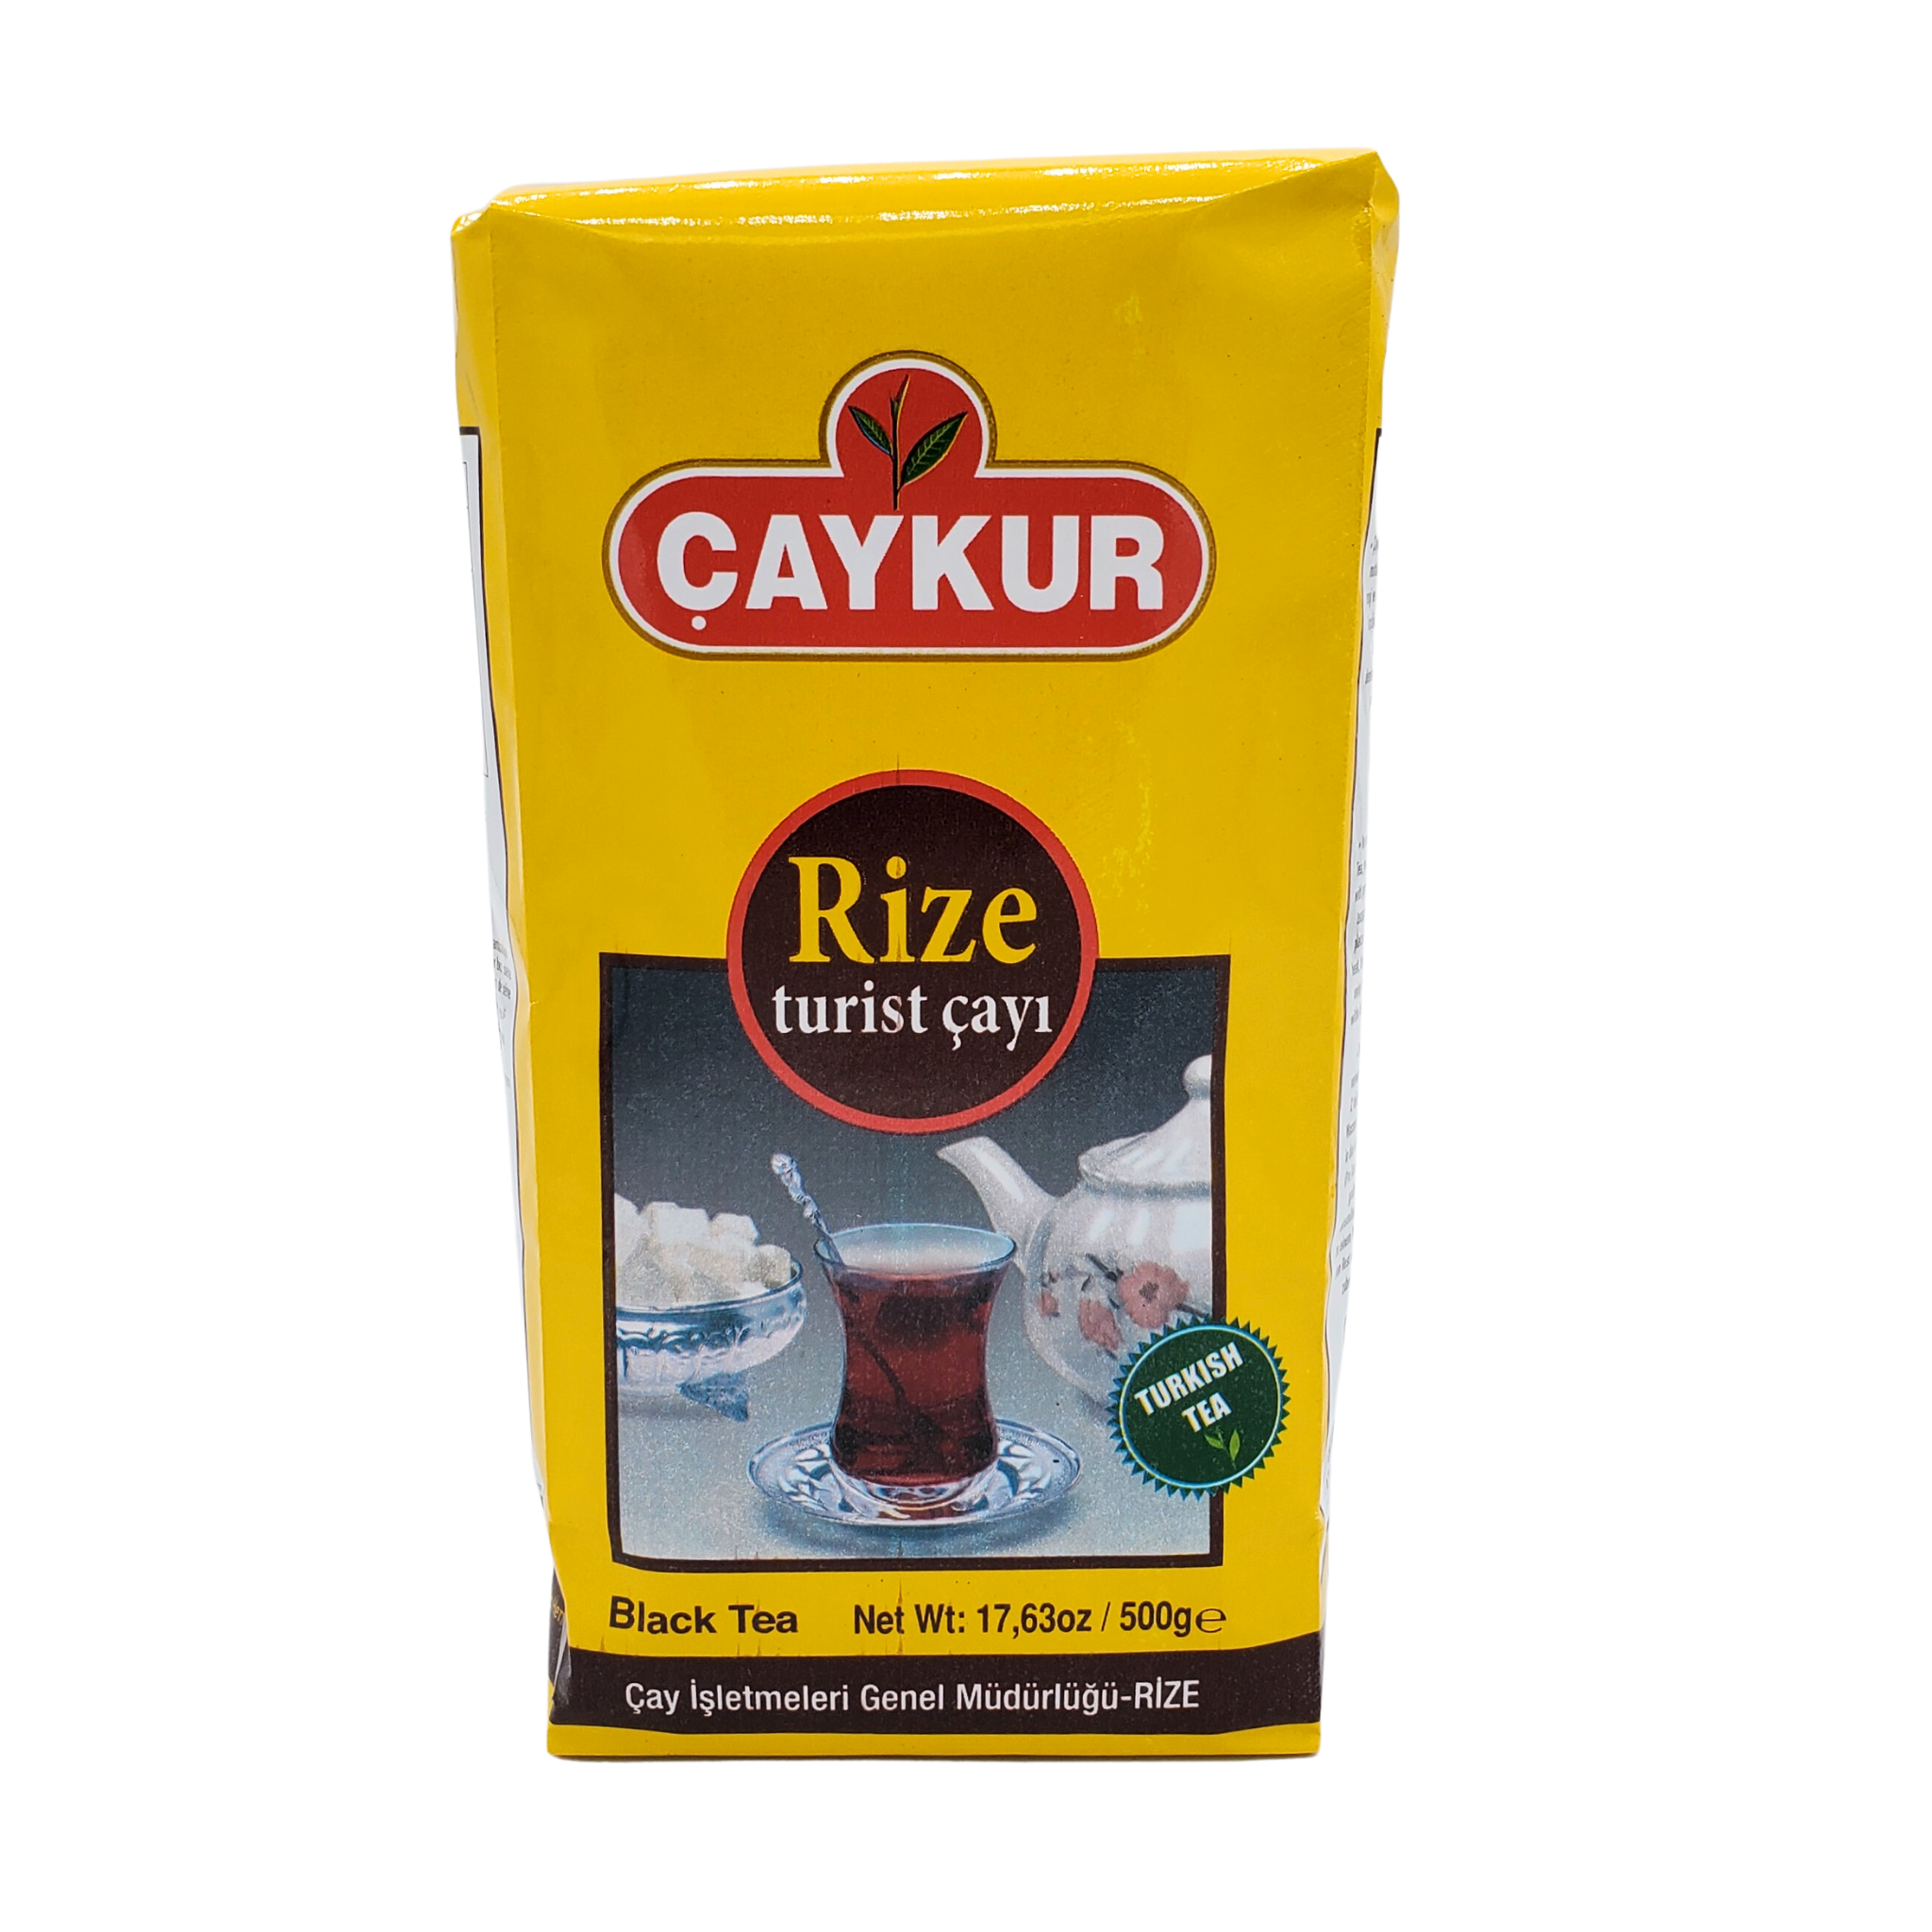 Caykur Rize Turist Cayi Black Tea 500g